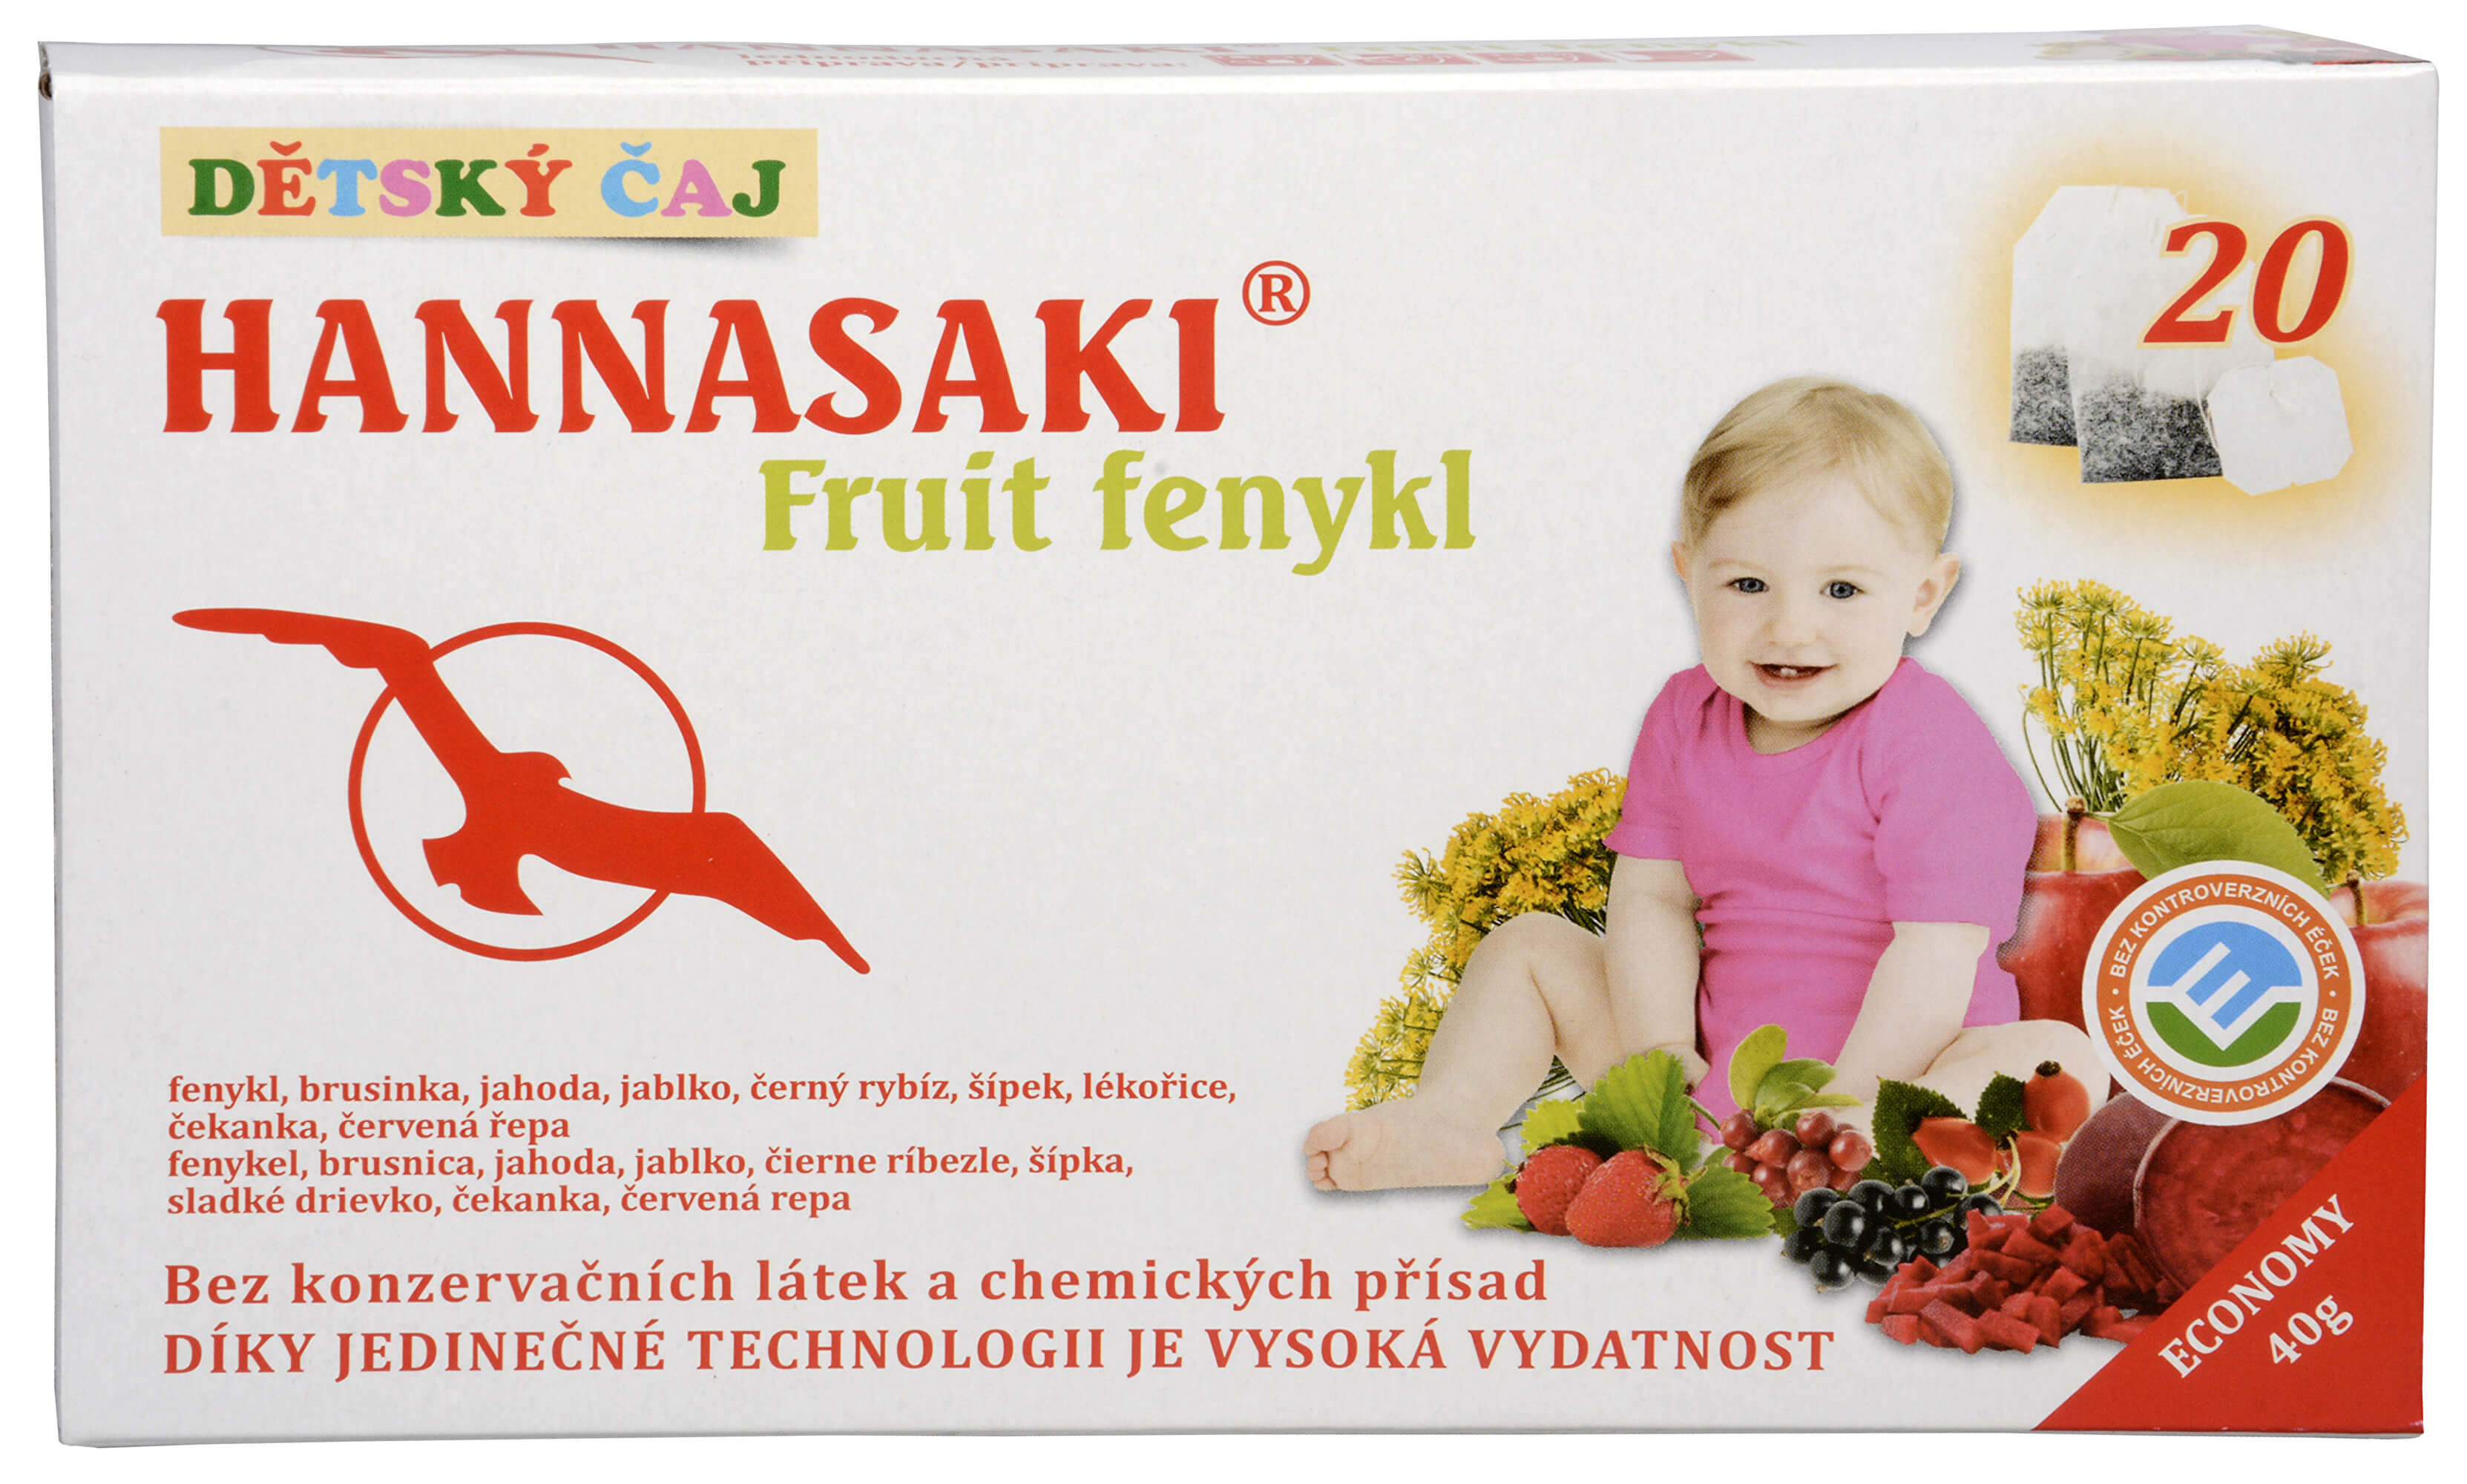 Hannasaki Fruit fenykl - dětský ovocný čaj 20 sáčků